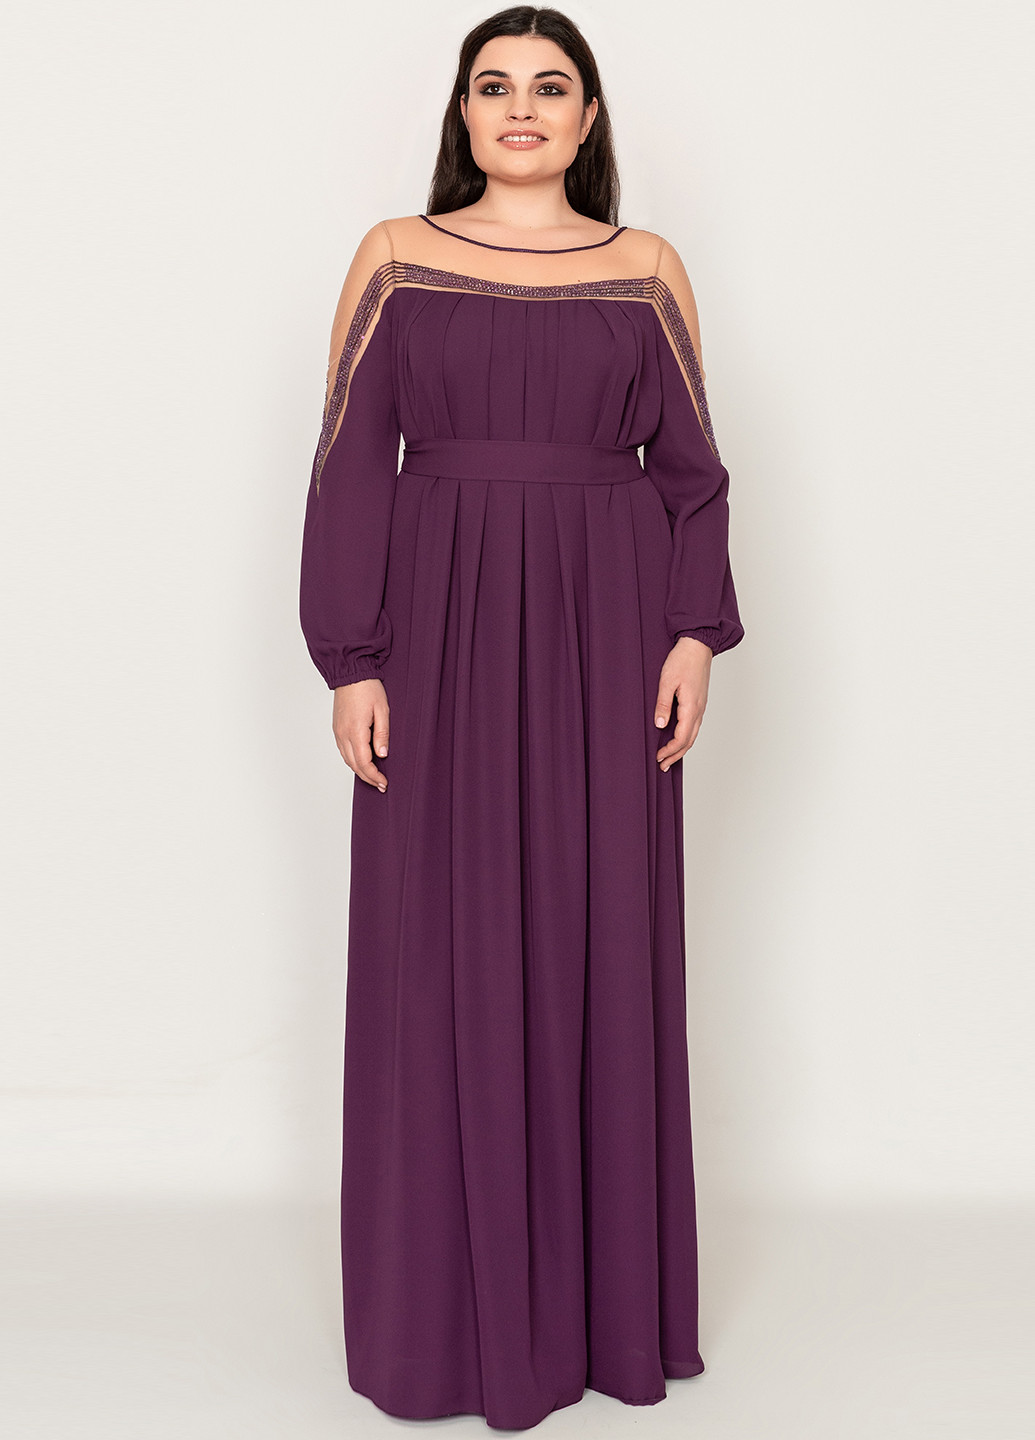 Фиолетовое вечернее платье с длинным рукавом, макси Seam однотонное